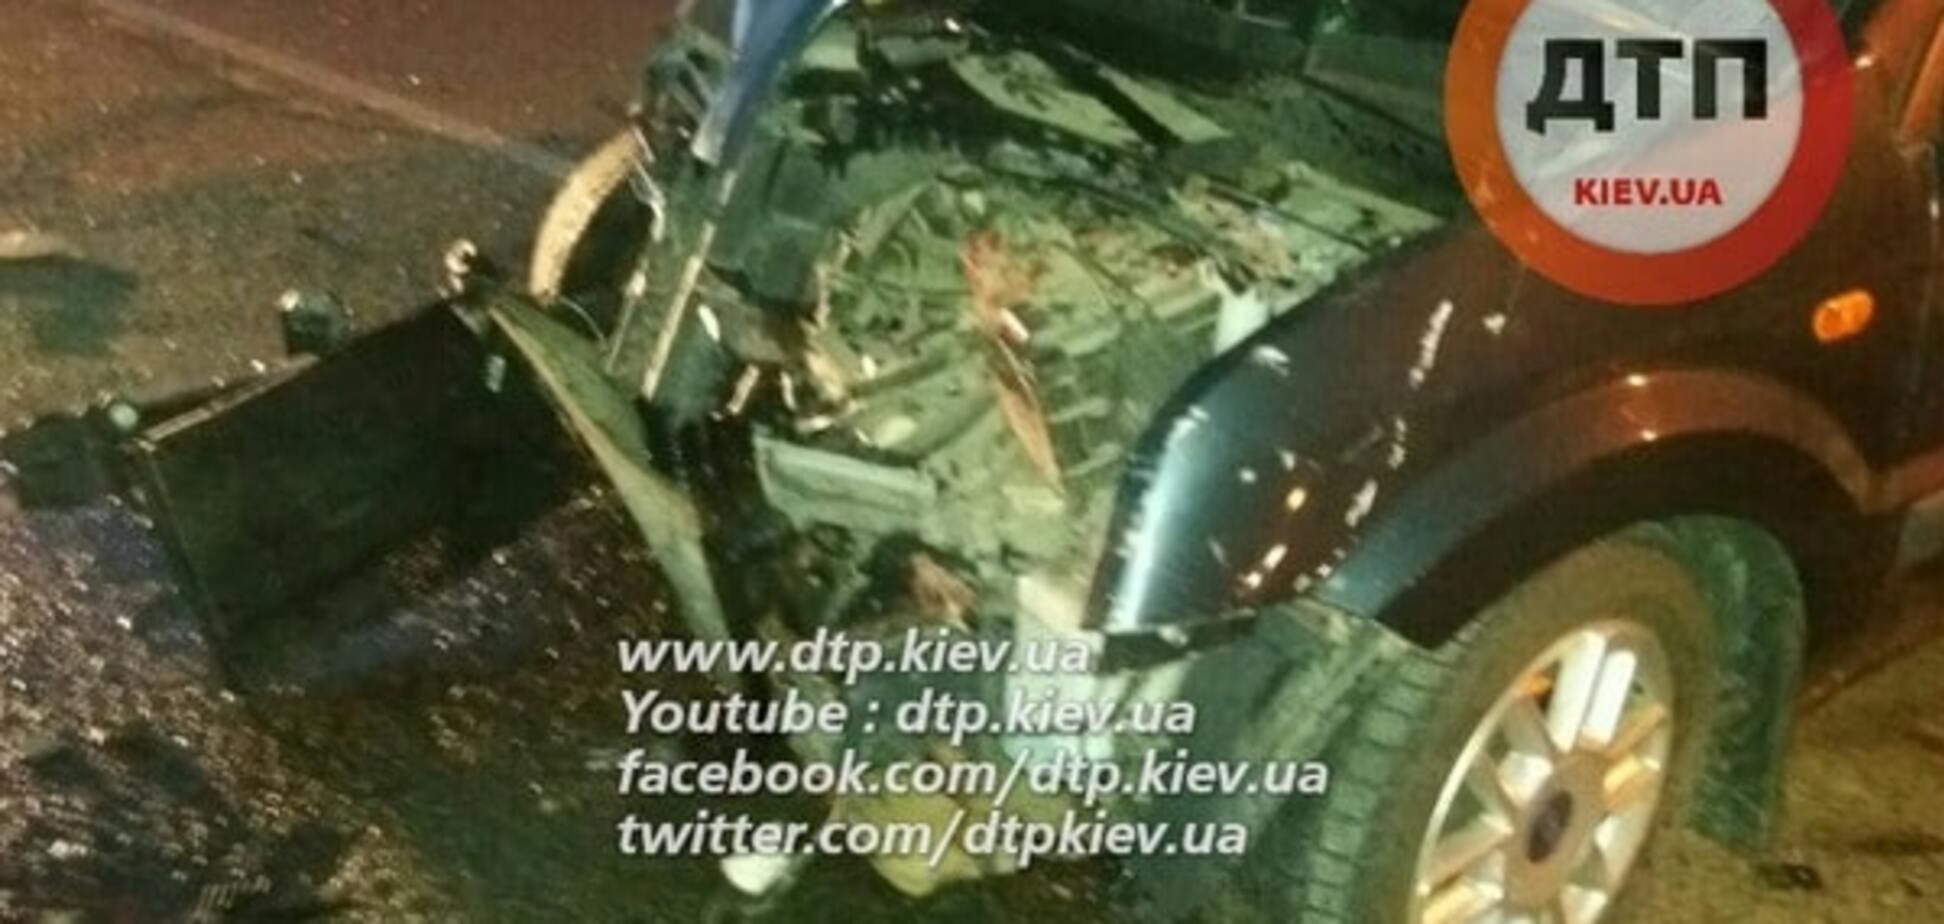 Під Києвом автомобіль врізався в бетонну огорожу: є жертви